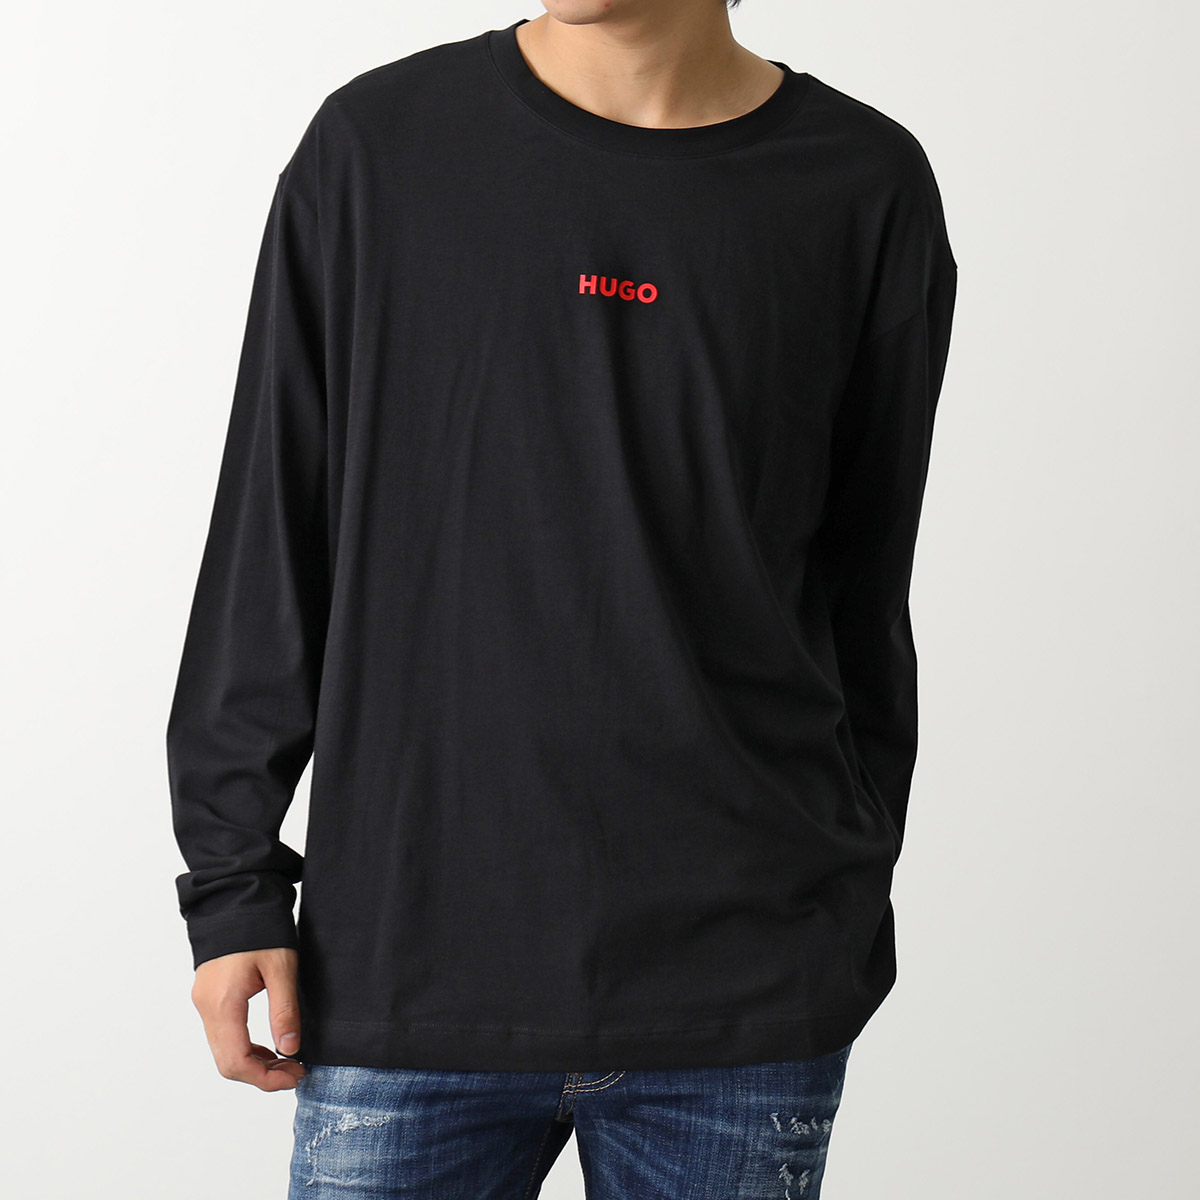 HUGO BOSS ヒューゴボス Tシャツ 50502399 10241810 メンズ 長袖 カットソー ロンT ロゴT ストレッチ クルーネック  001 | インポートセレクト musee